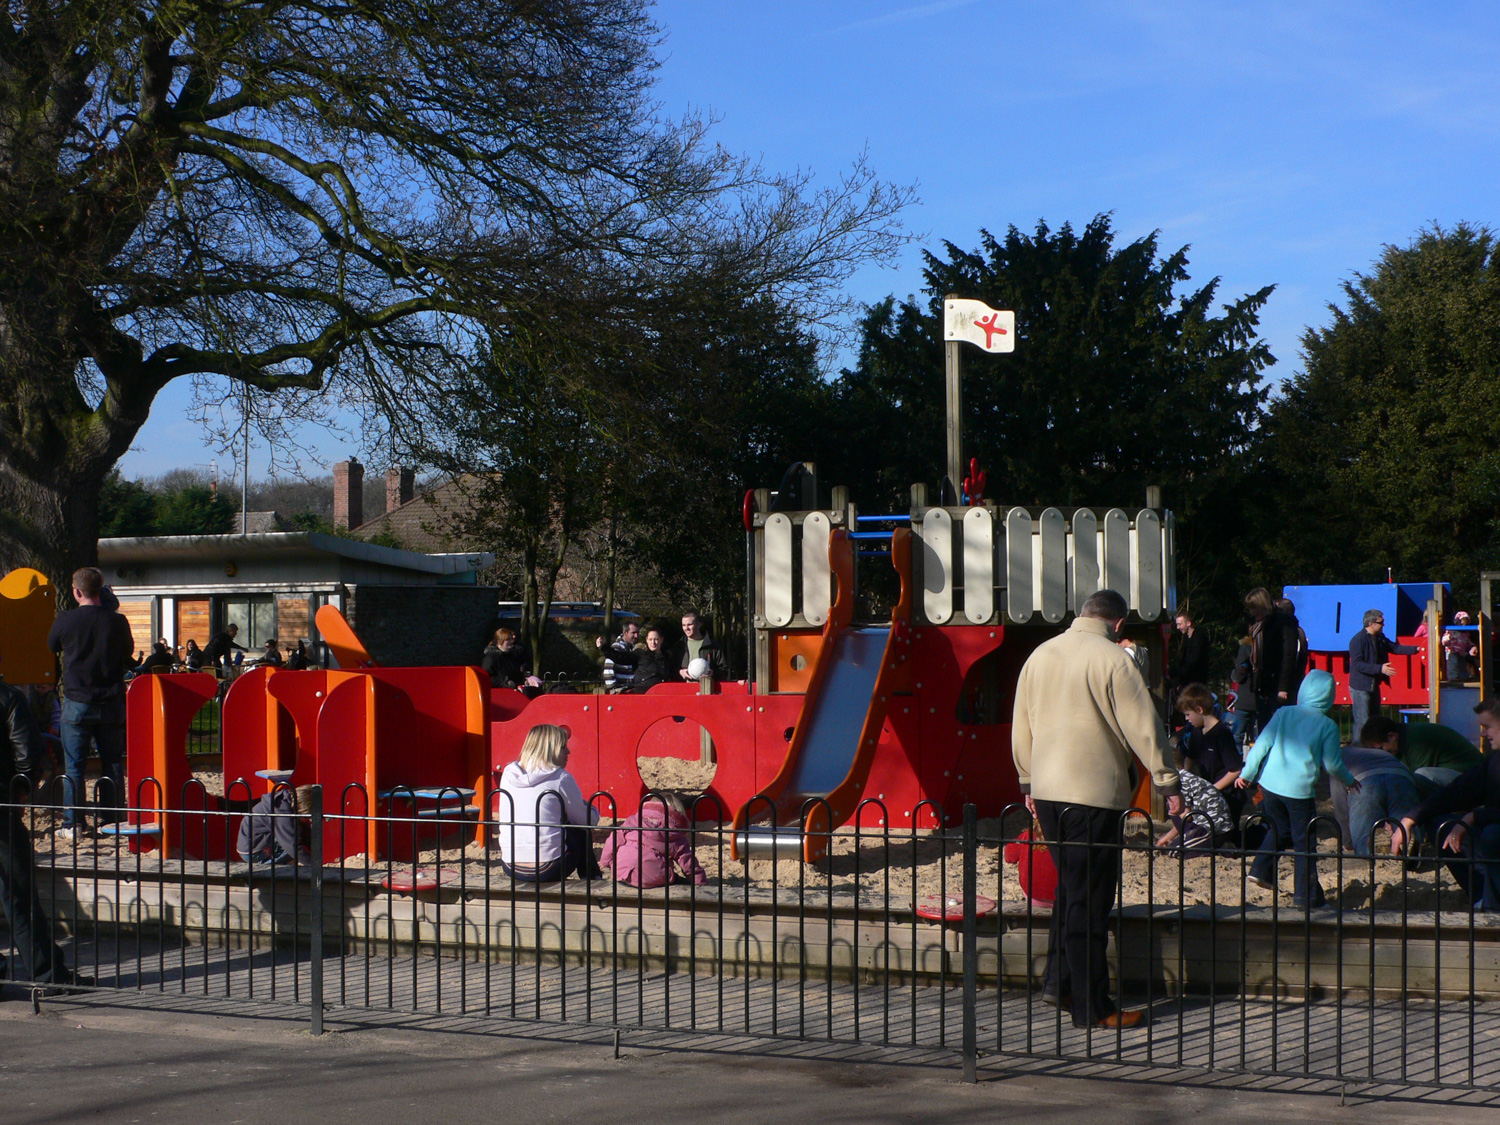 Playground in Blaise park near Bristol